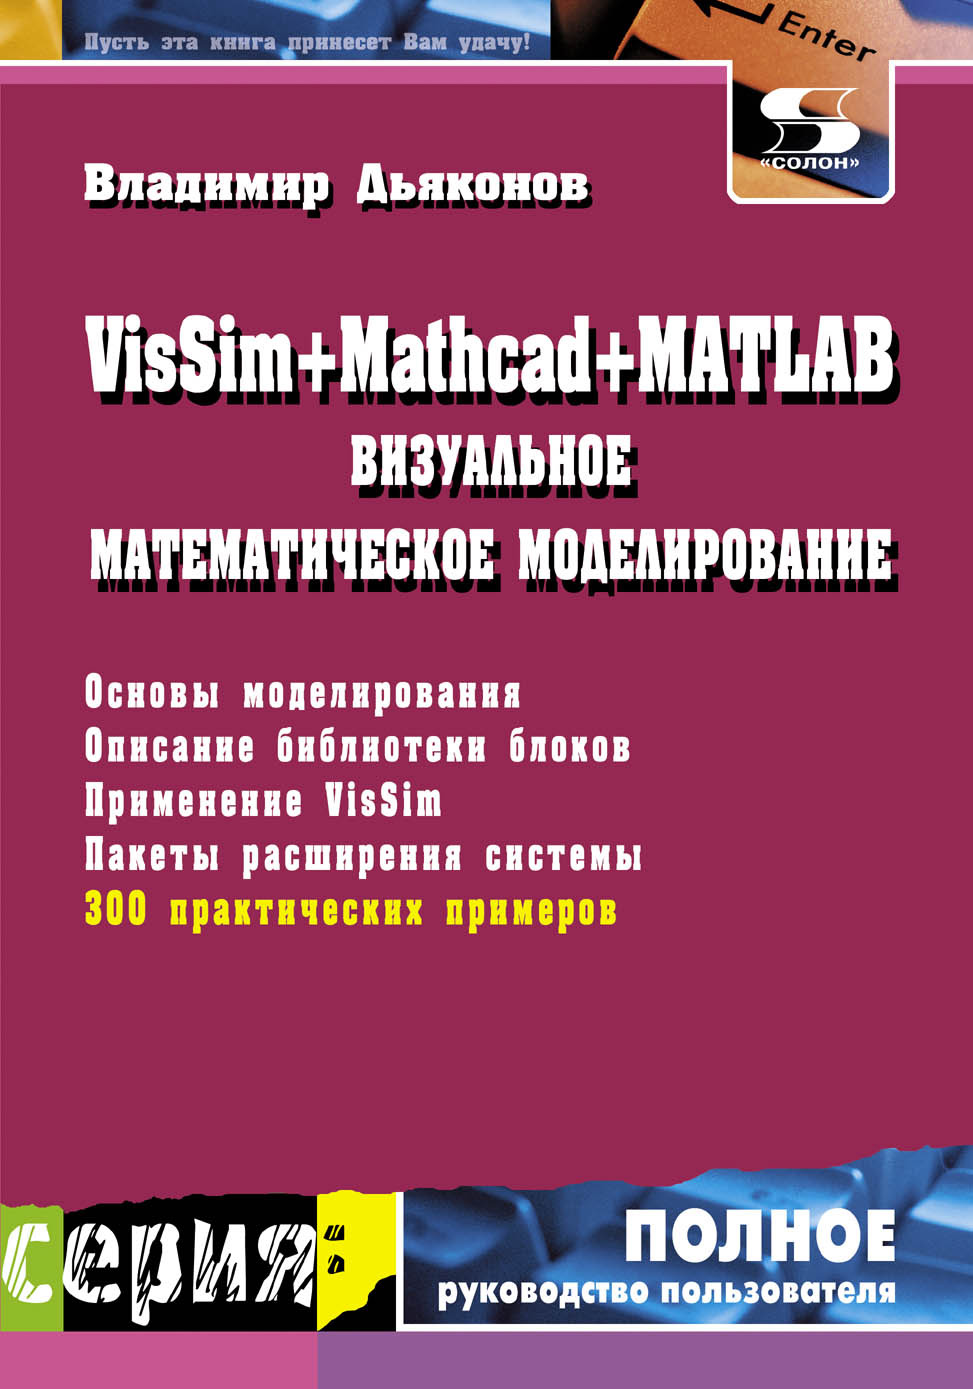 Книга Полное руководство пользователя VisSim + Mathcad + MATLAB. Визуальное математическое моделирование созданная В. П. Дьяконов может относится к жанру математика, программы. Стоимость электронной книги VisSim + Mathcad + MATLAB. Визуальное математическое моделирование с идентификатором 8337026 составляет 300.00 руб.